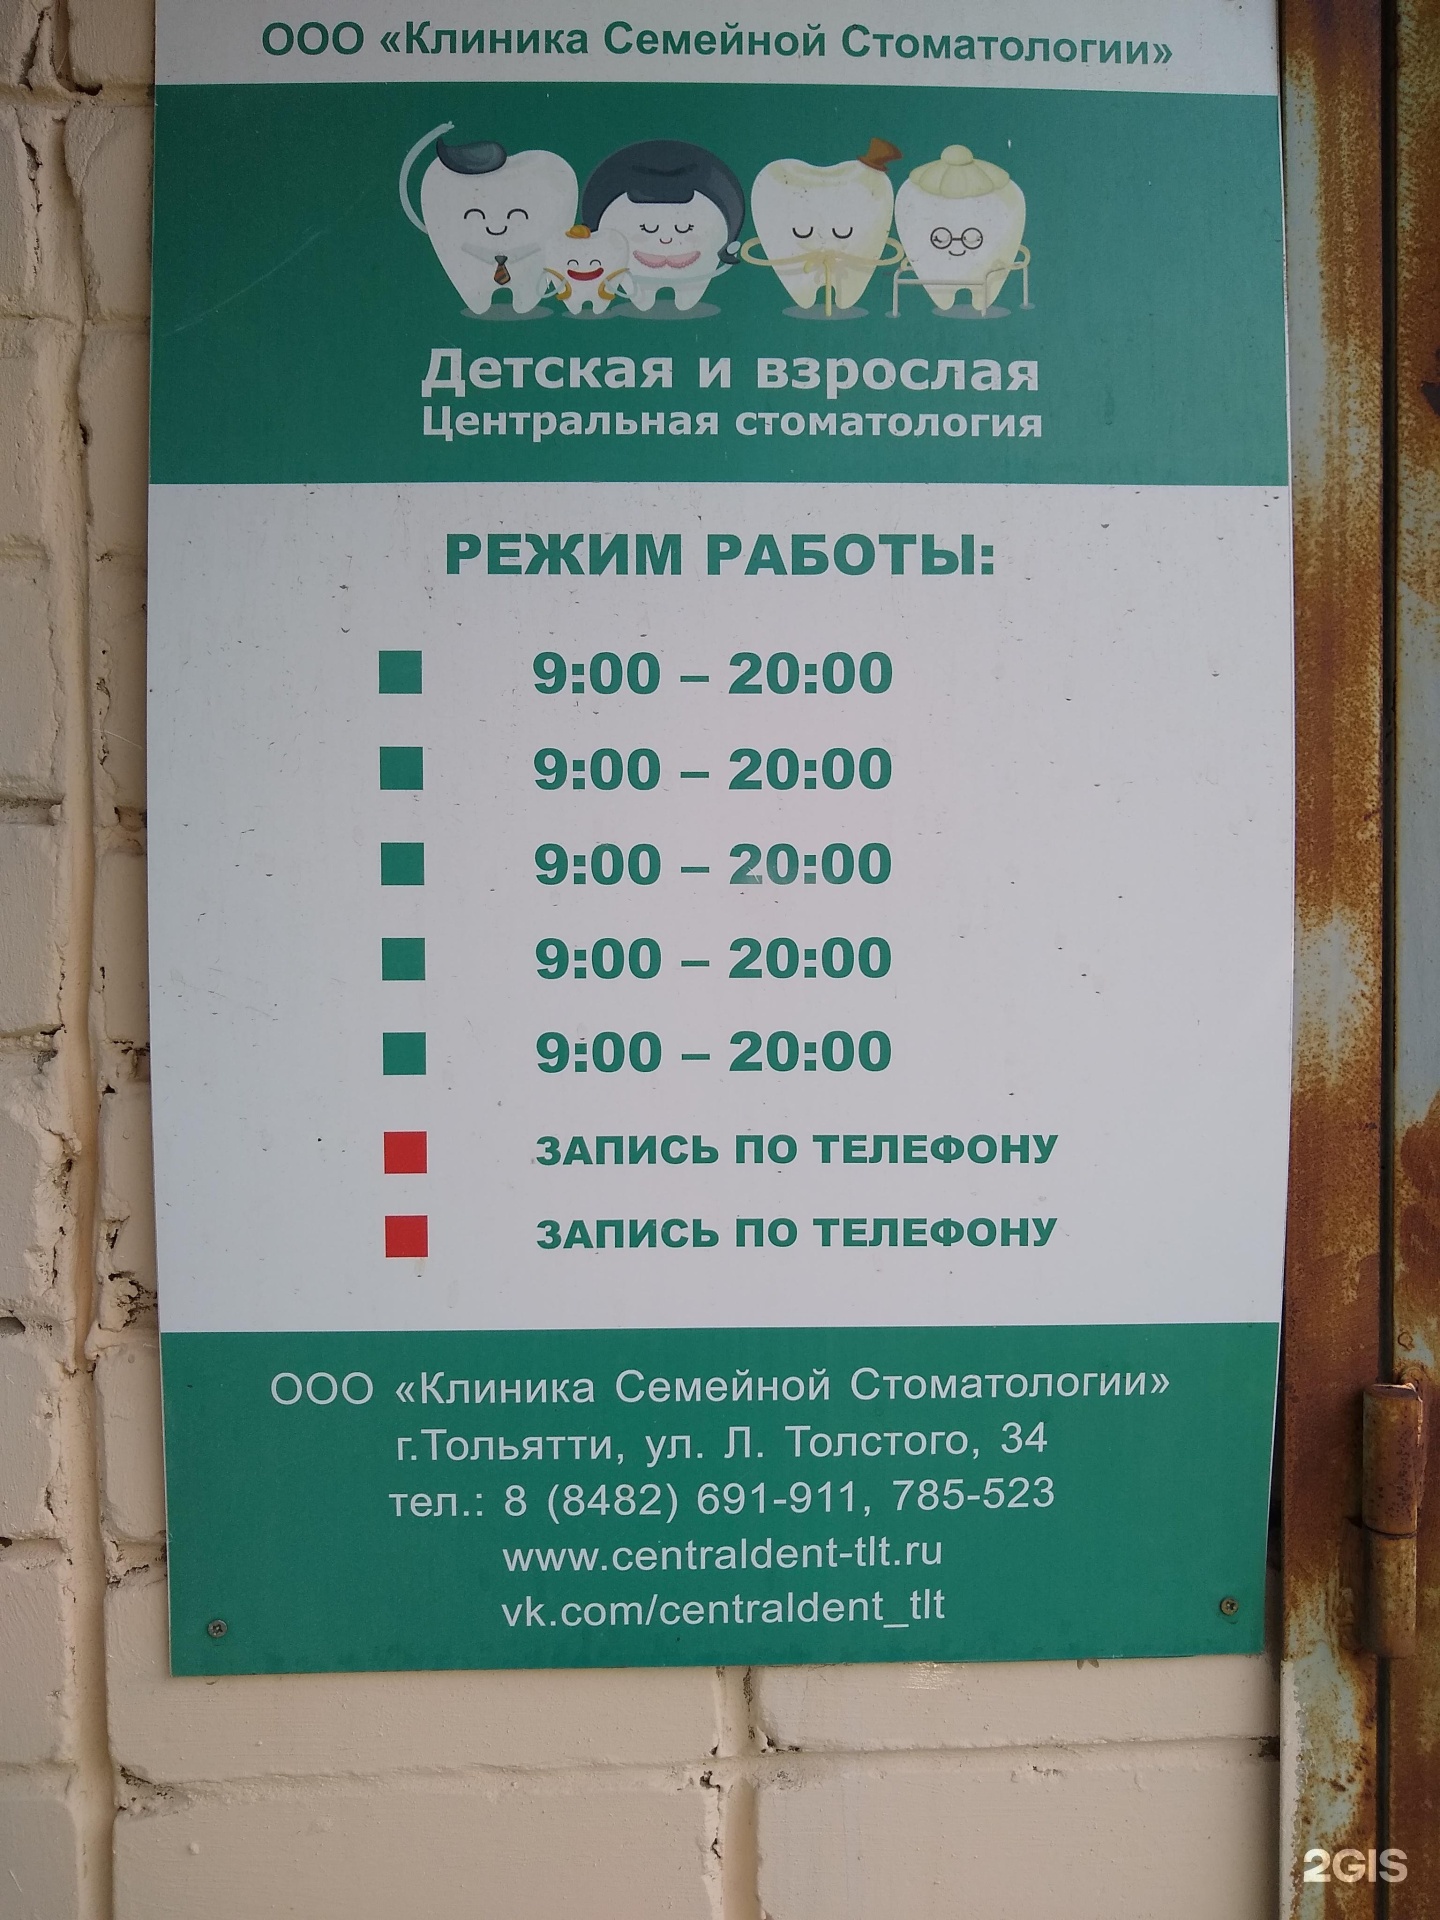 Детская и взрослая Центральная стоматология, Тольятти.